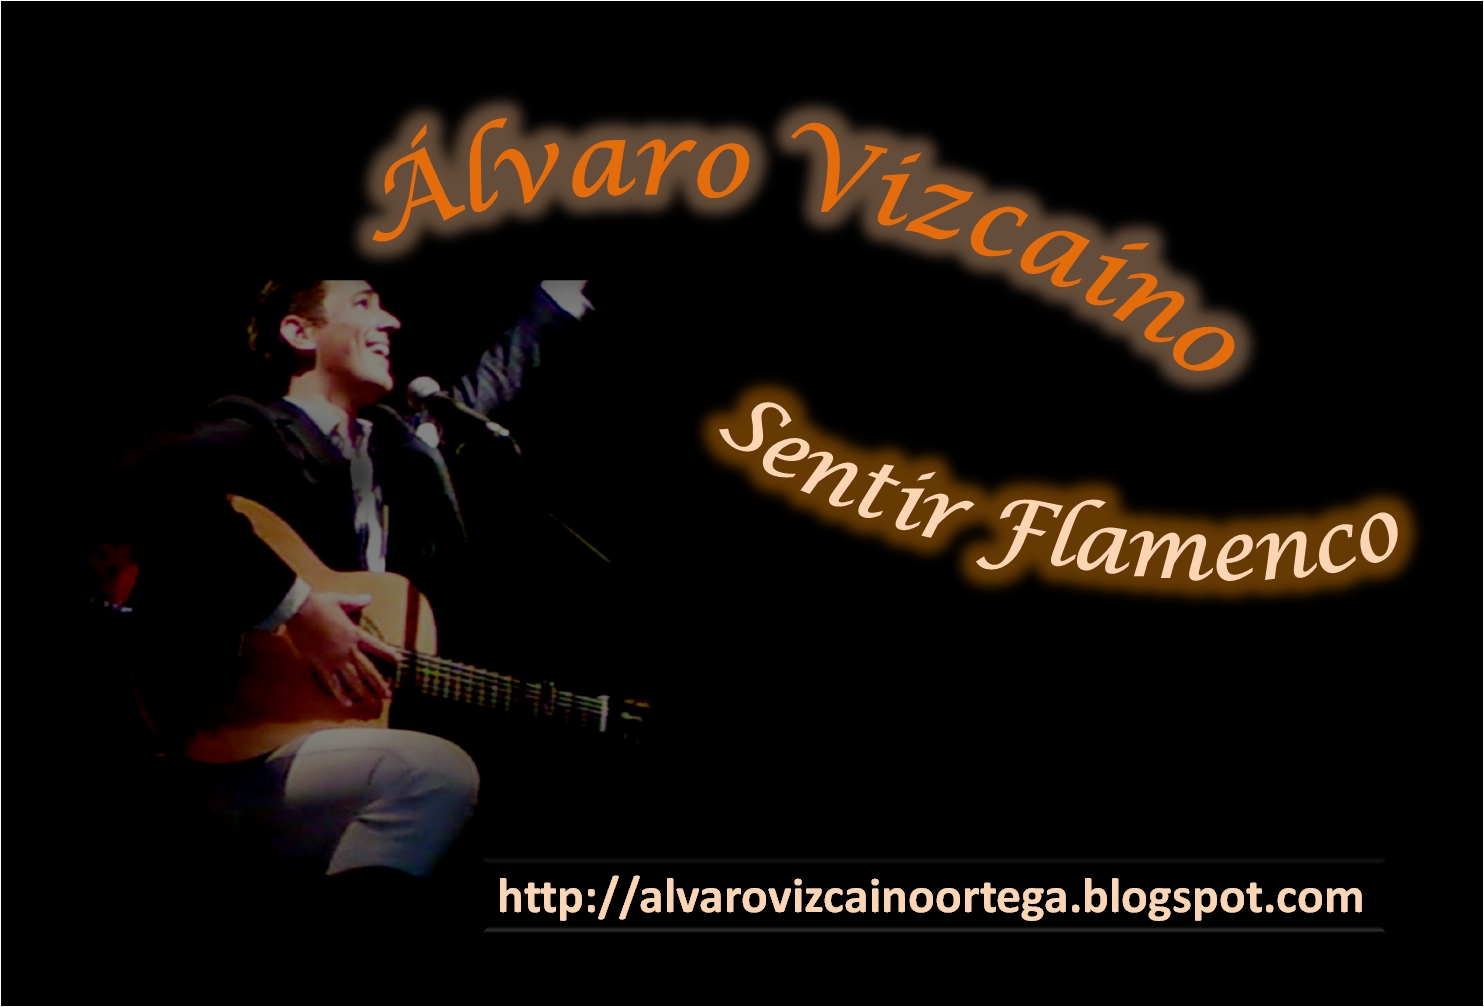 Plataforma de apoyo a Álvaro Vizcaino ♫ ♬  El Califa de la Copla  ♪  - Página 28 Fondo+de+pantalla+de+Alvaro+Vizcaino+Sentir+flamenco